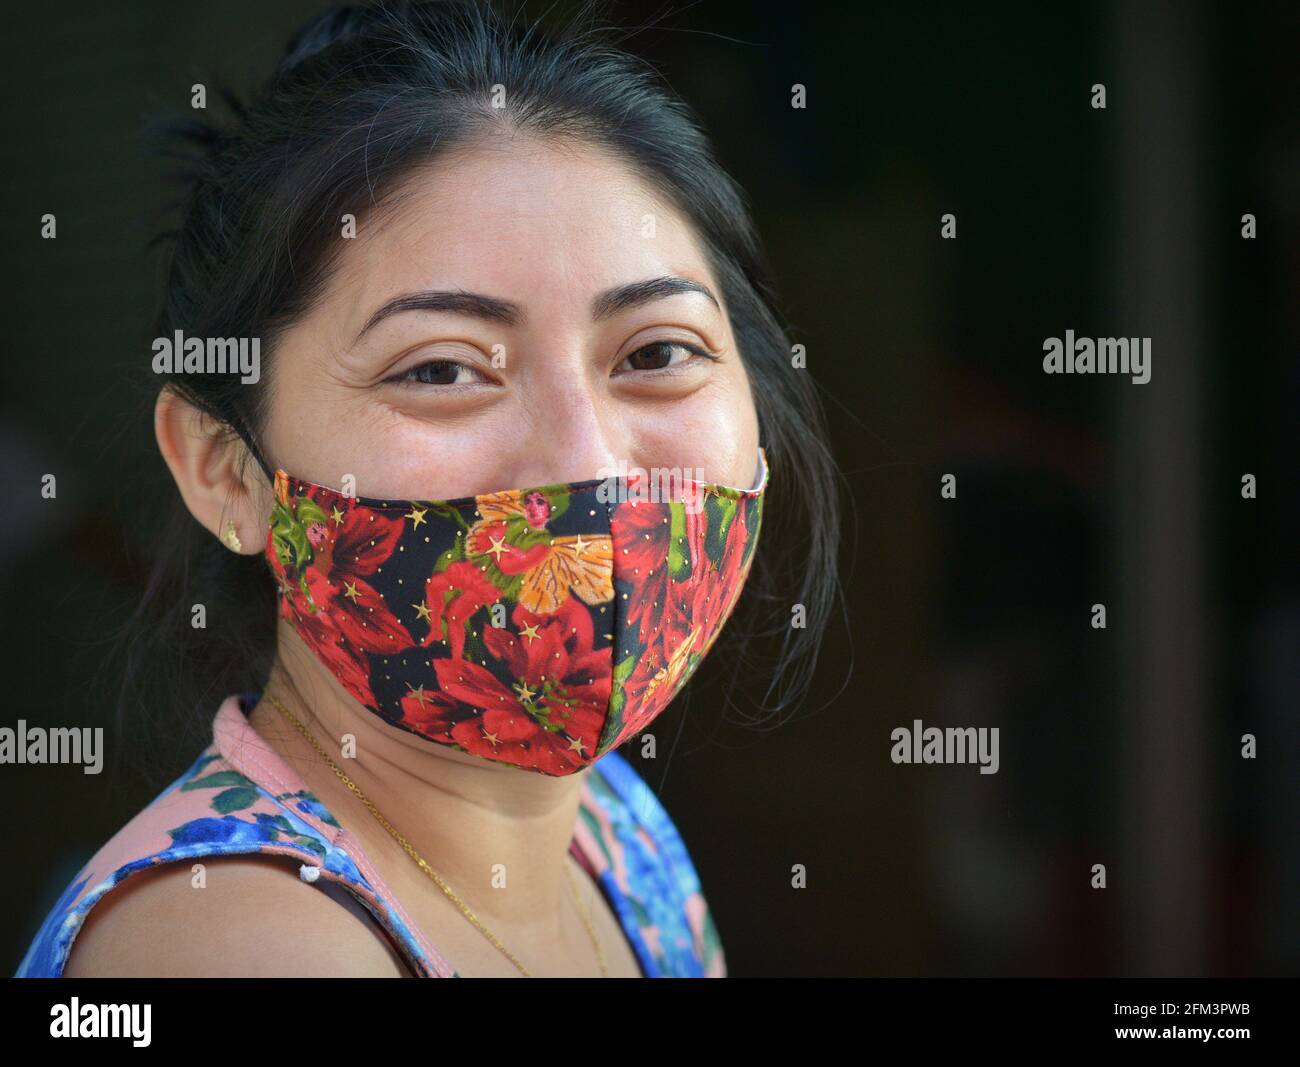 Charmante jeune femme mexicaine positive aux yeux bruns souriants porte un masque facial en tissu non médical coloré pendant la pandémie du coronavirus. Banque D'Images